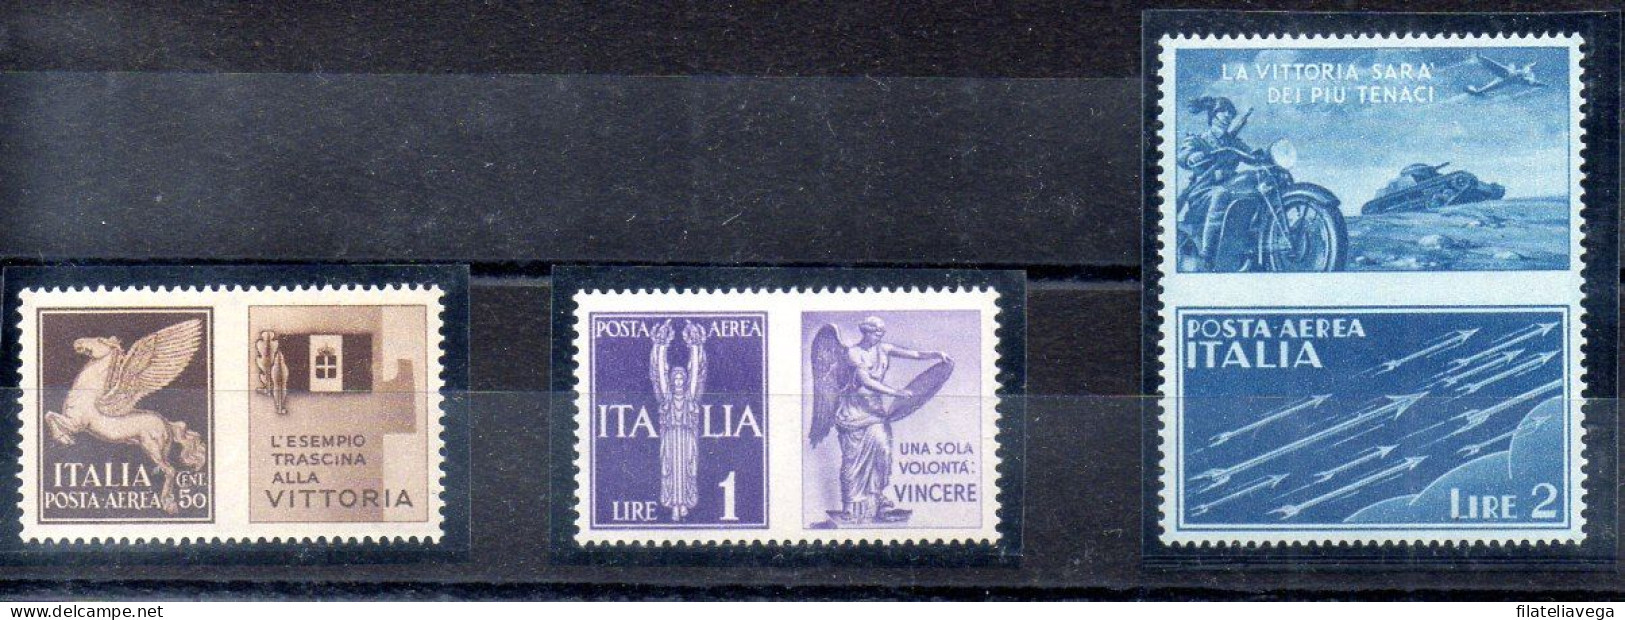 Italia 3 Series "PROPAGANDA DE GUERRA" Año 1942 -NO EMITIDOS- Nº Michel 328P5 + 330P6 + 331P7 * - Propaganda Di Guerra